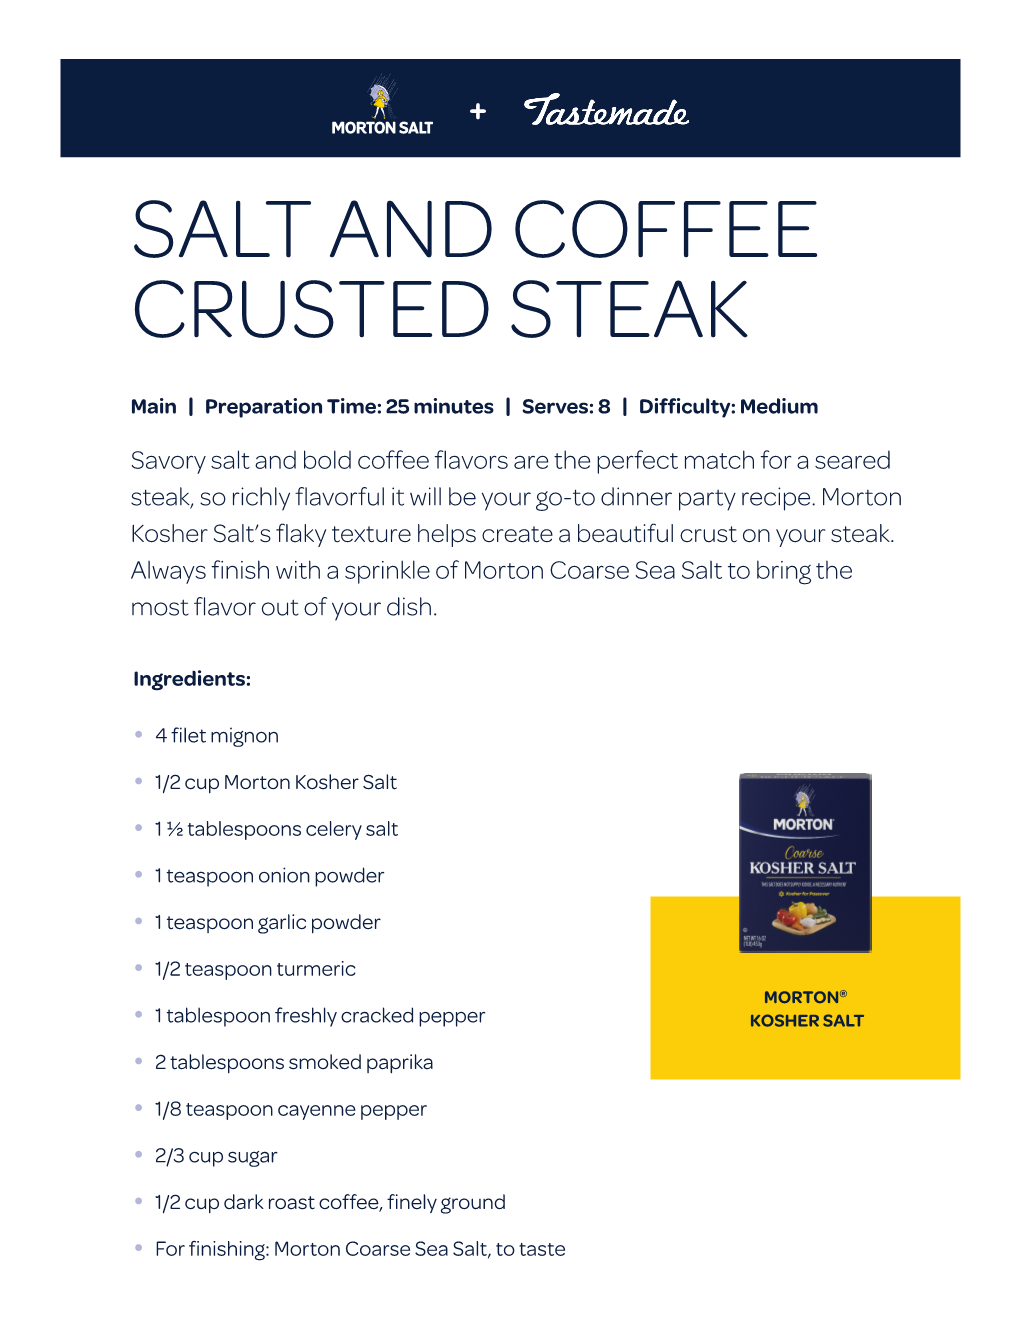 Salt and Coffee Crusted Steak